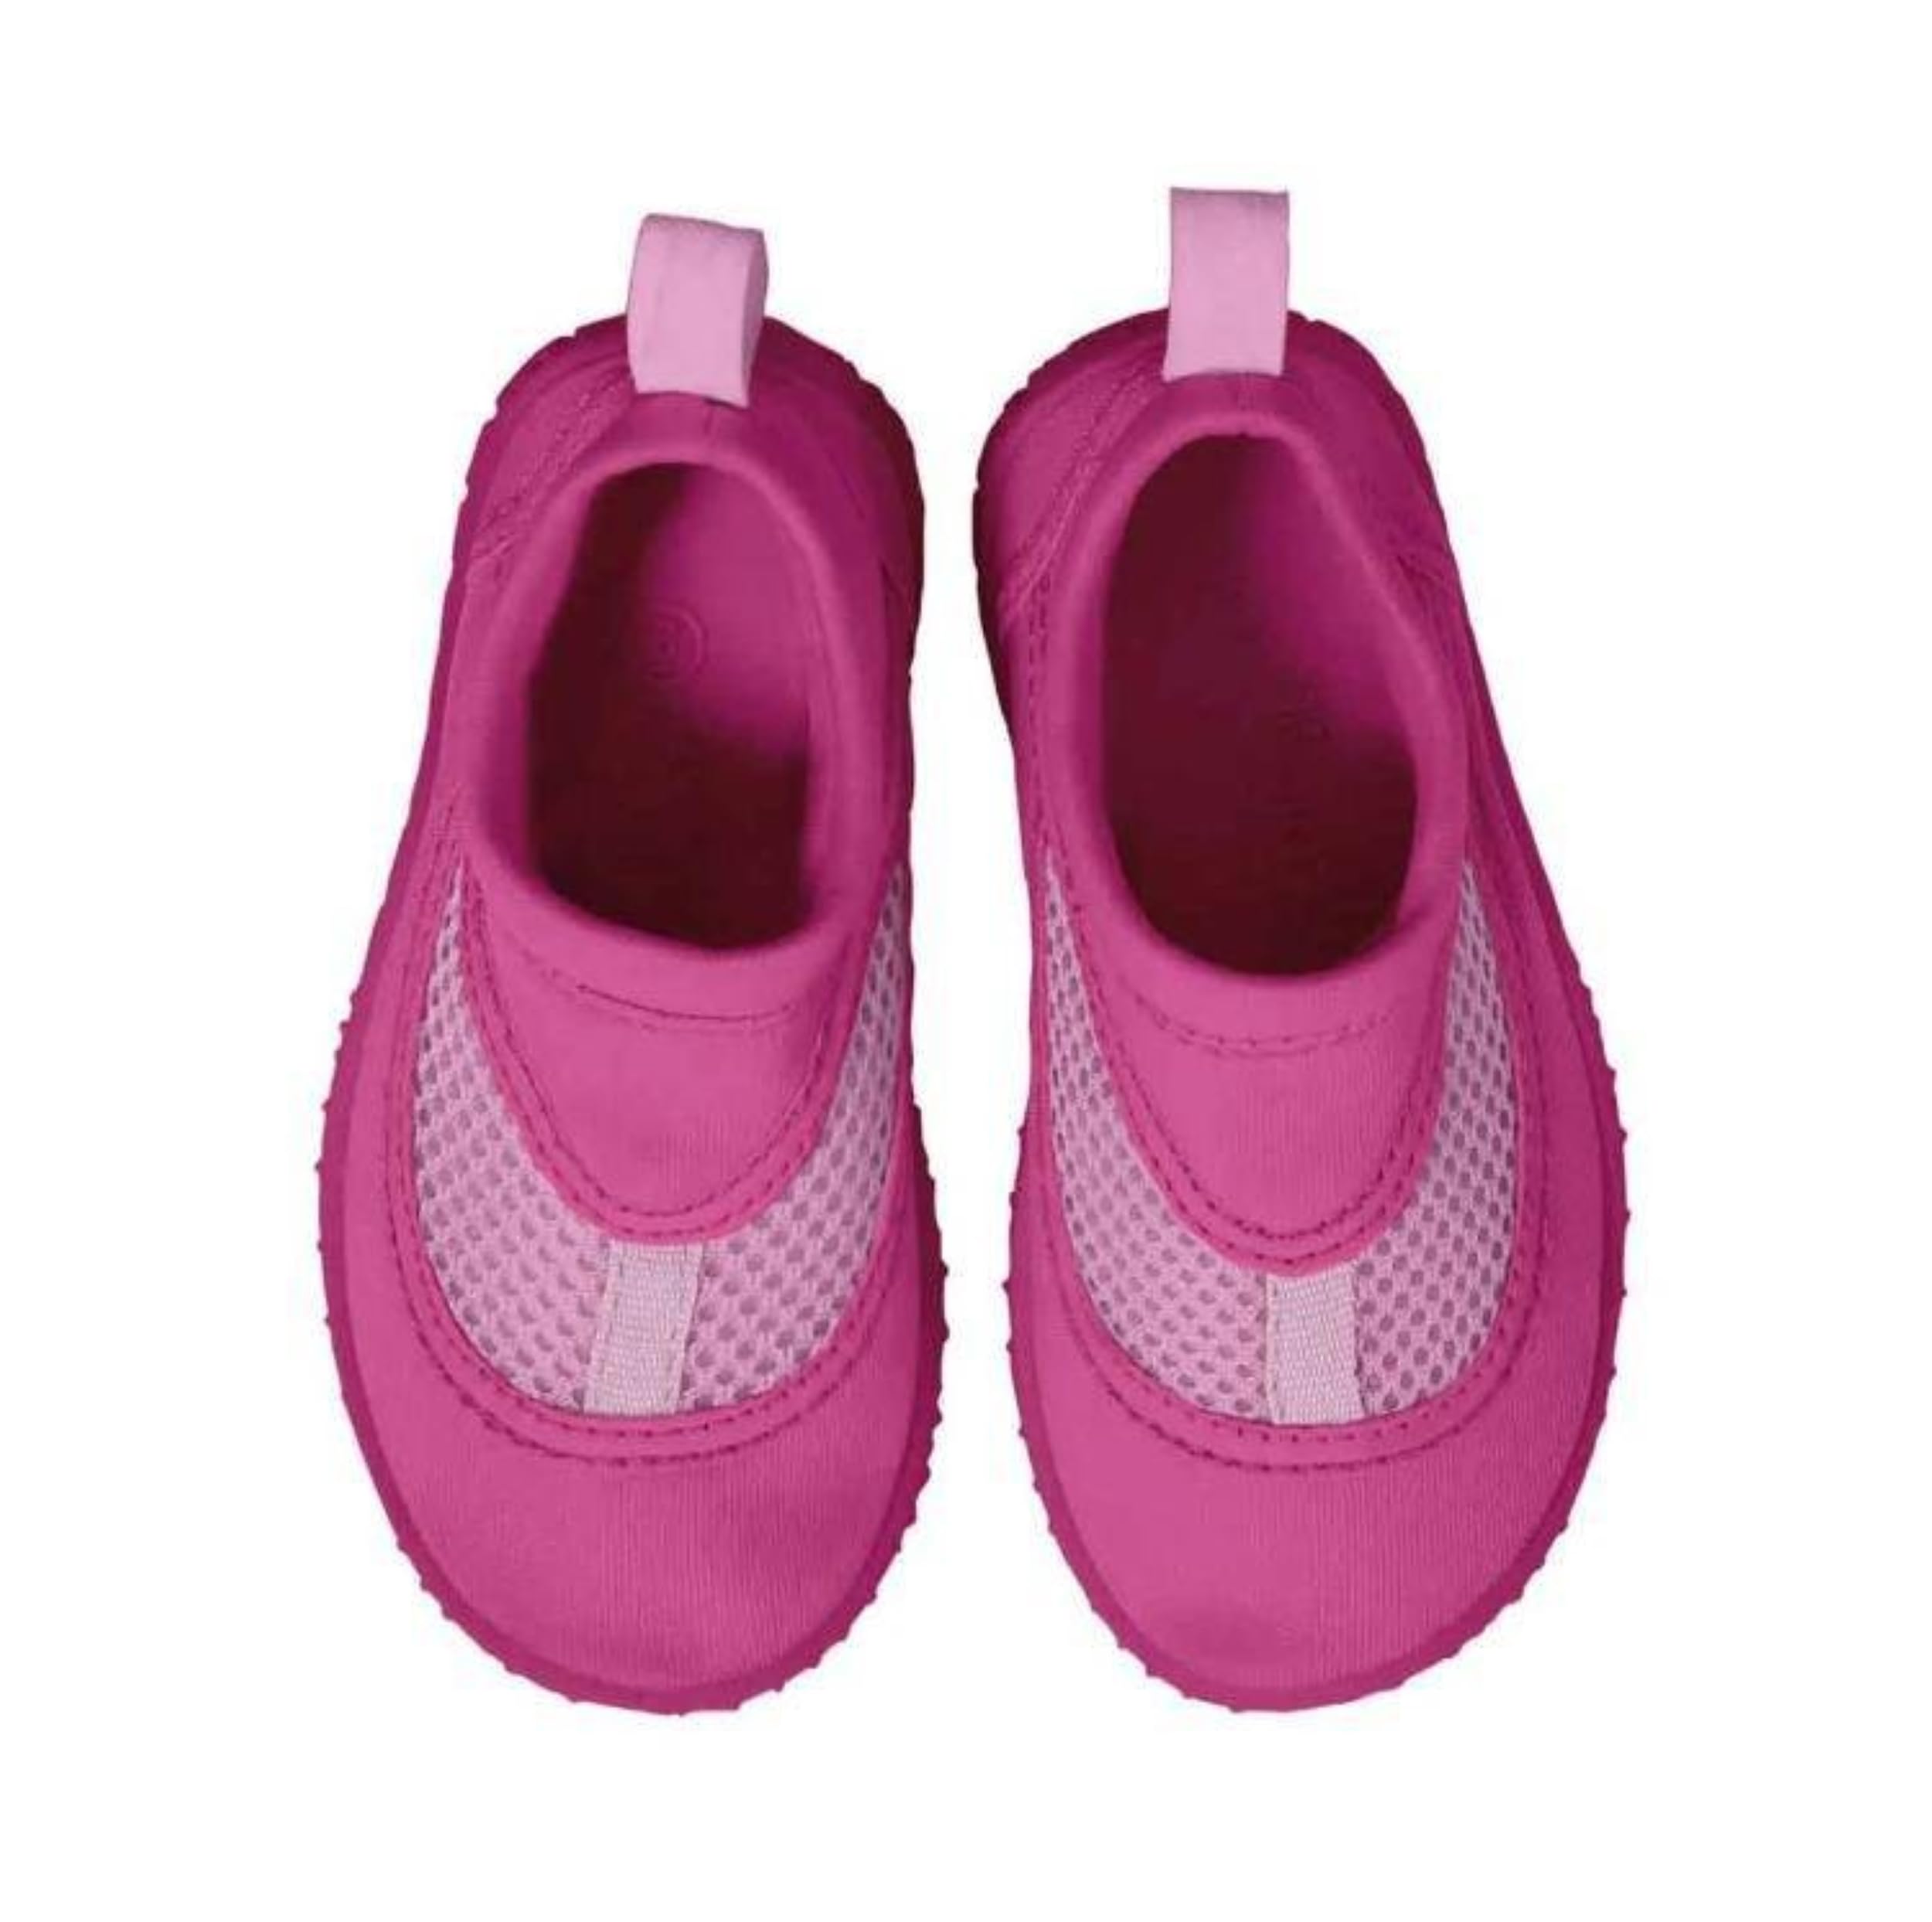 i play. Unisex-Child Water Shoe